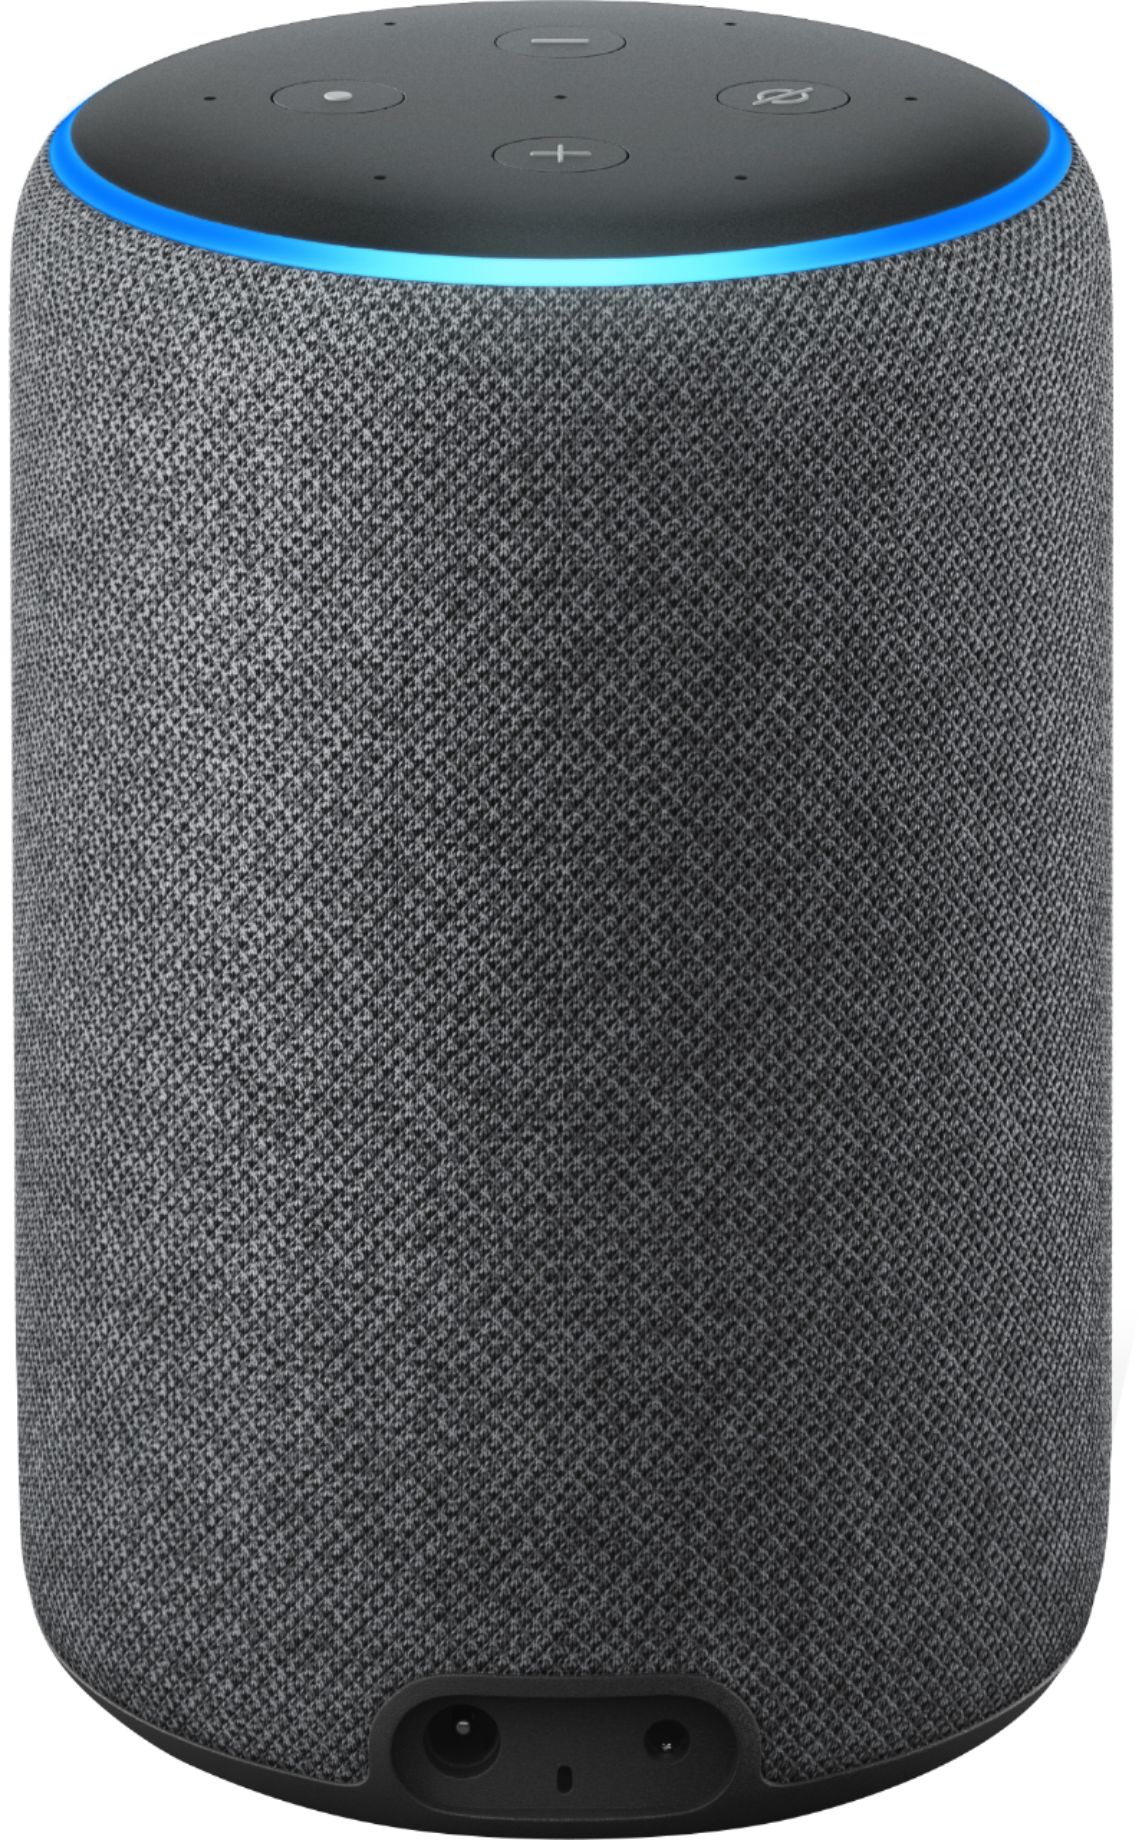 Buy: Amazon Echo (3rd Gen) Speaker with Alexa B07NFTVP7P